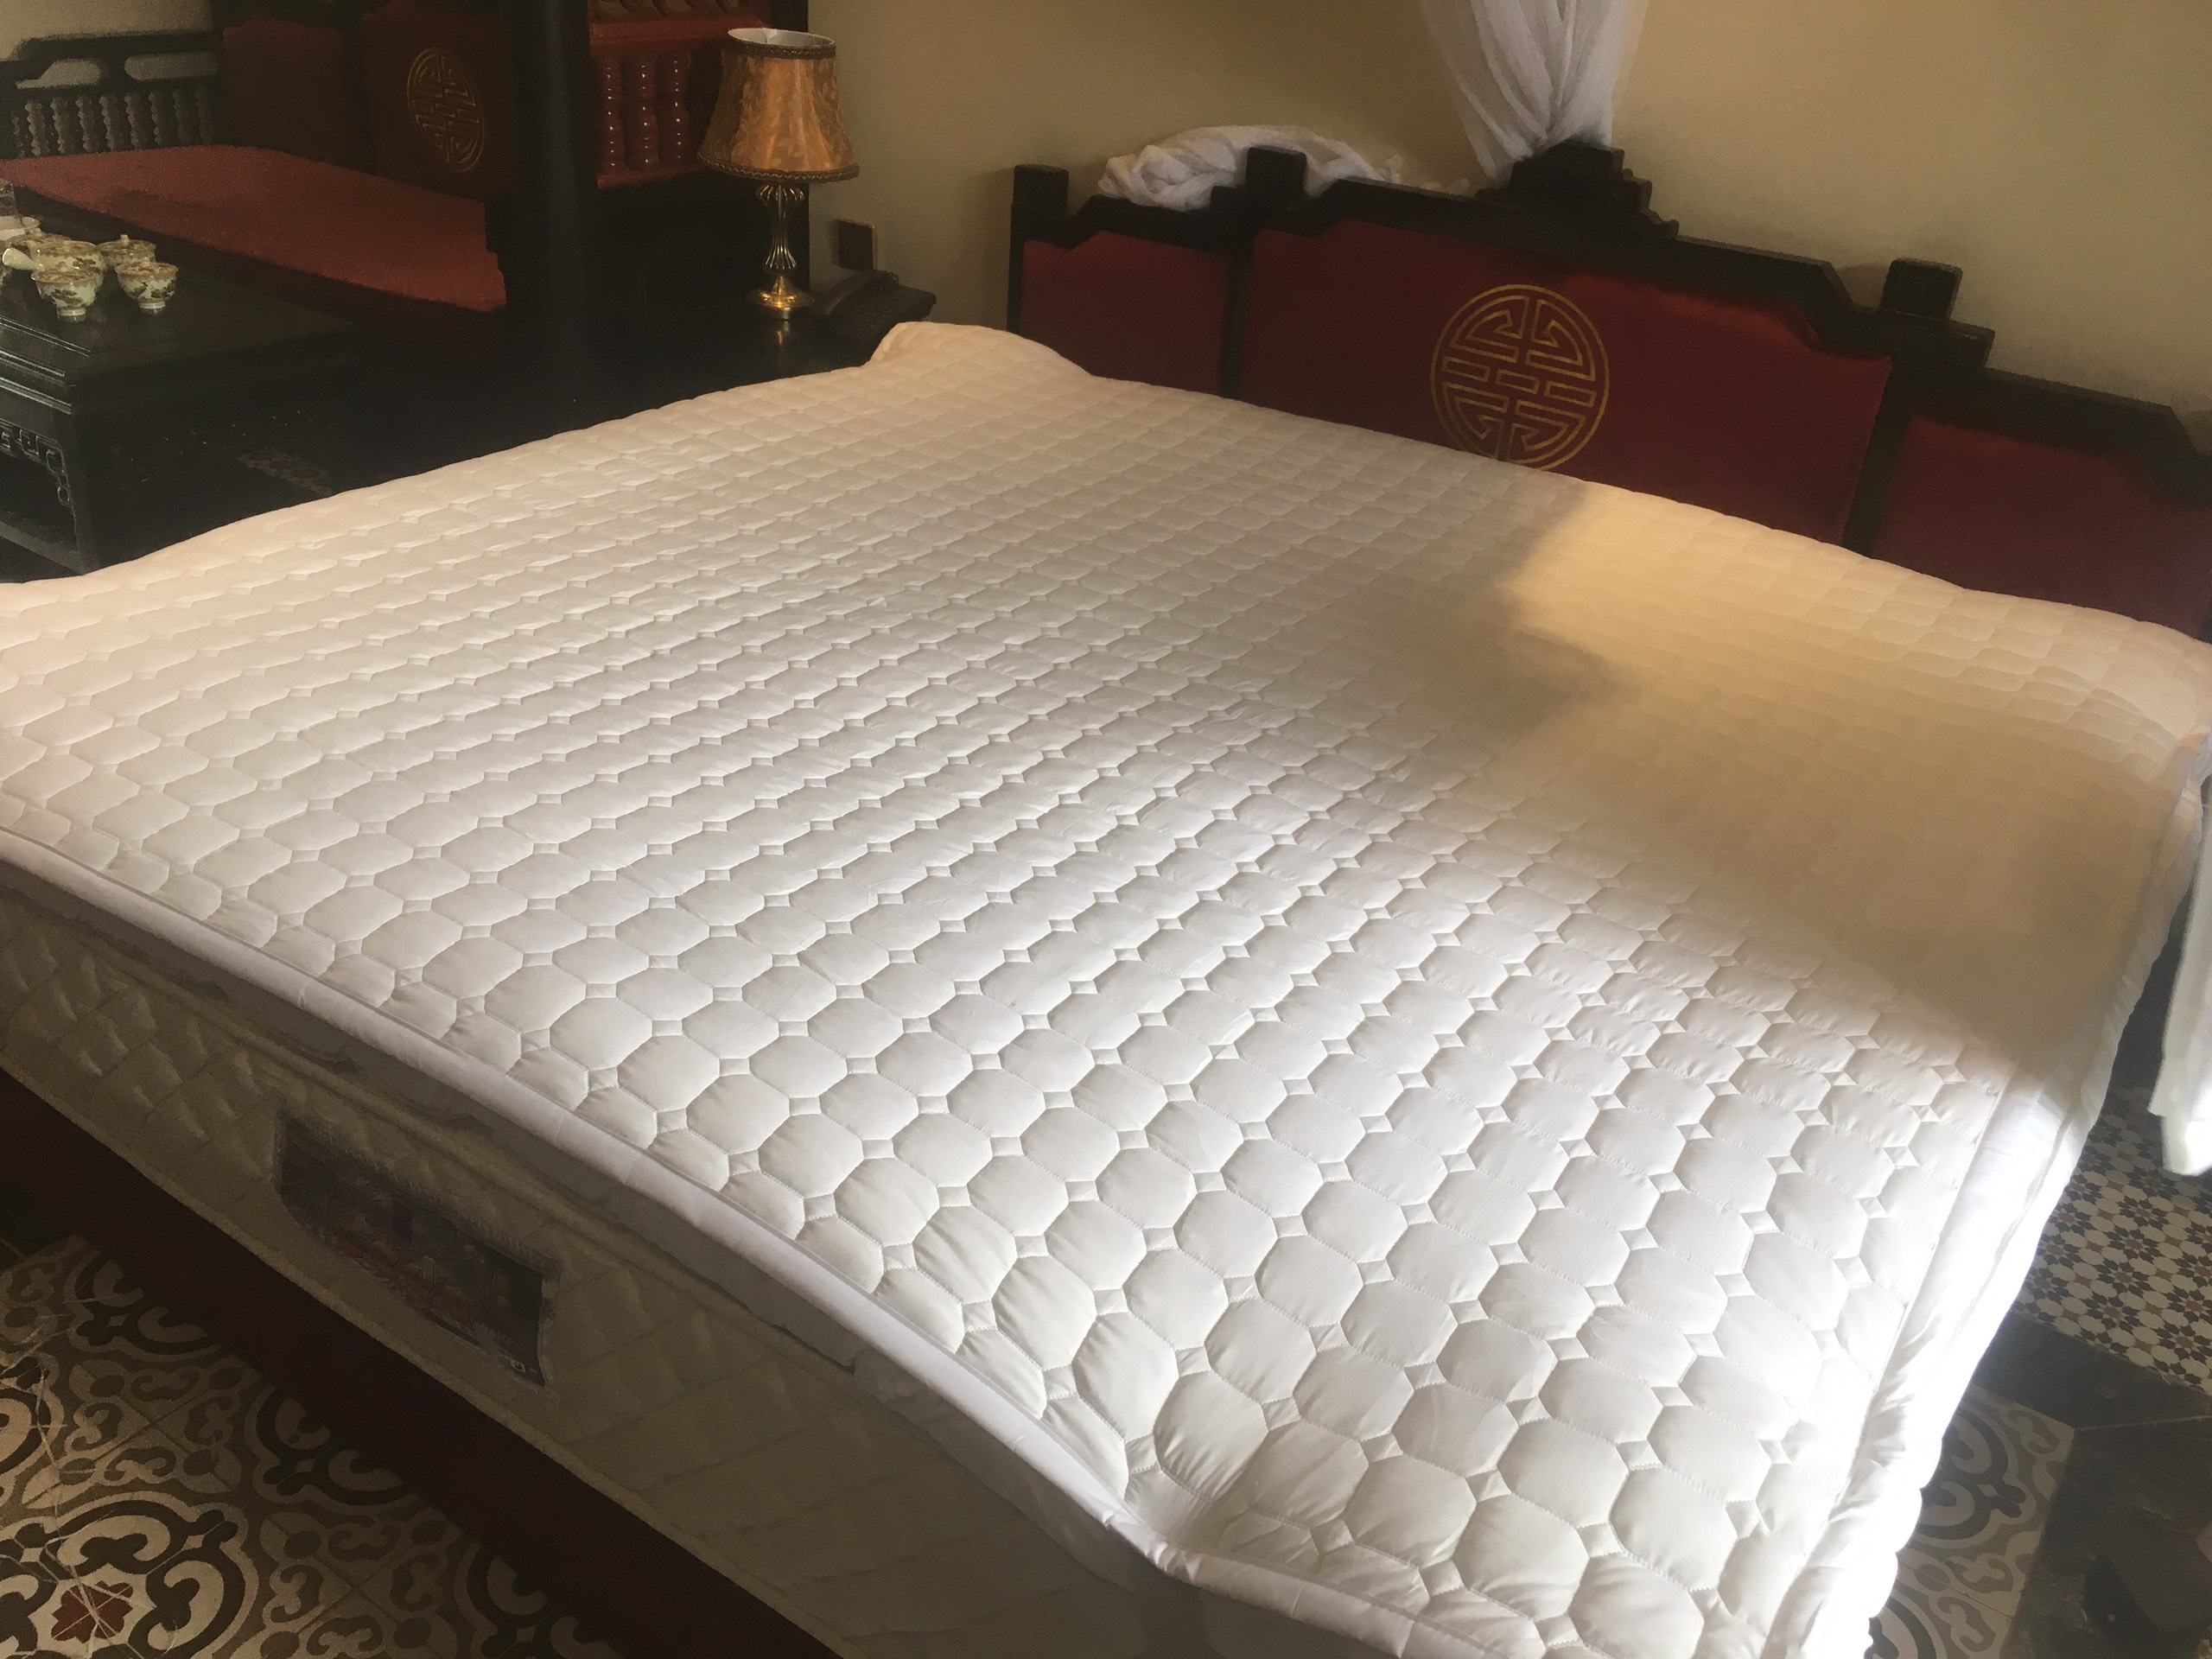 Tấm bảo vệ đệm DADA - Sản phẩm được dùng tại nhiều khách sạn, resort 5 sao - Tăng tuổi thọ cho đệm, chống bụi bẩn nấm mốc vi trùng - chống thấm tuyệt đối - Hàng Chính Hãng